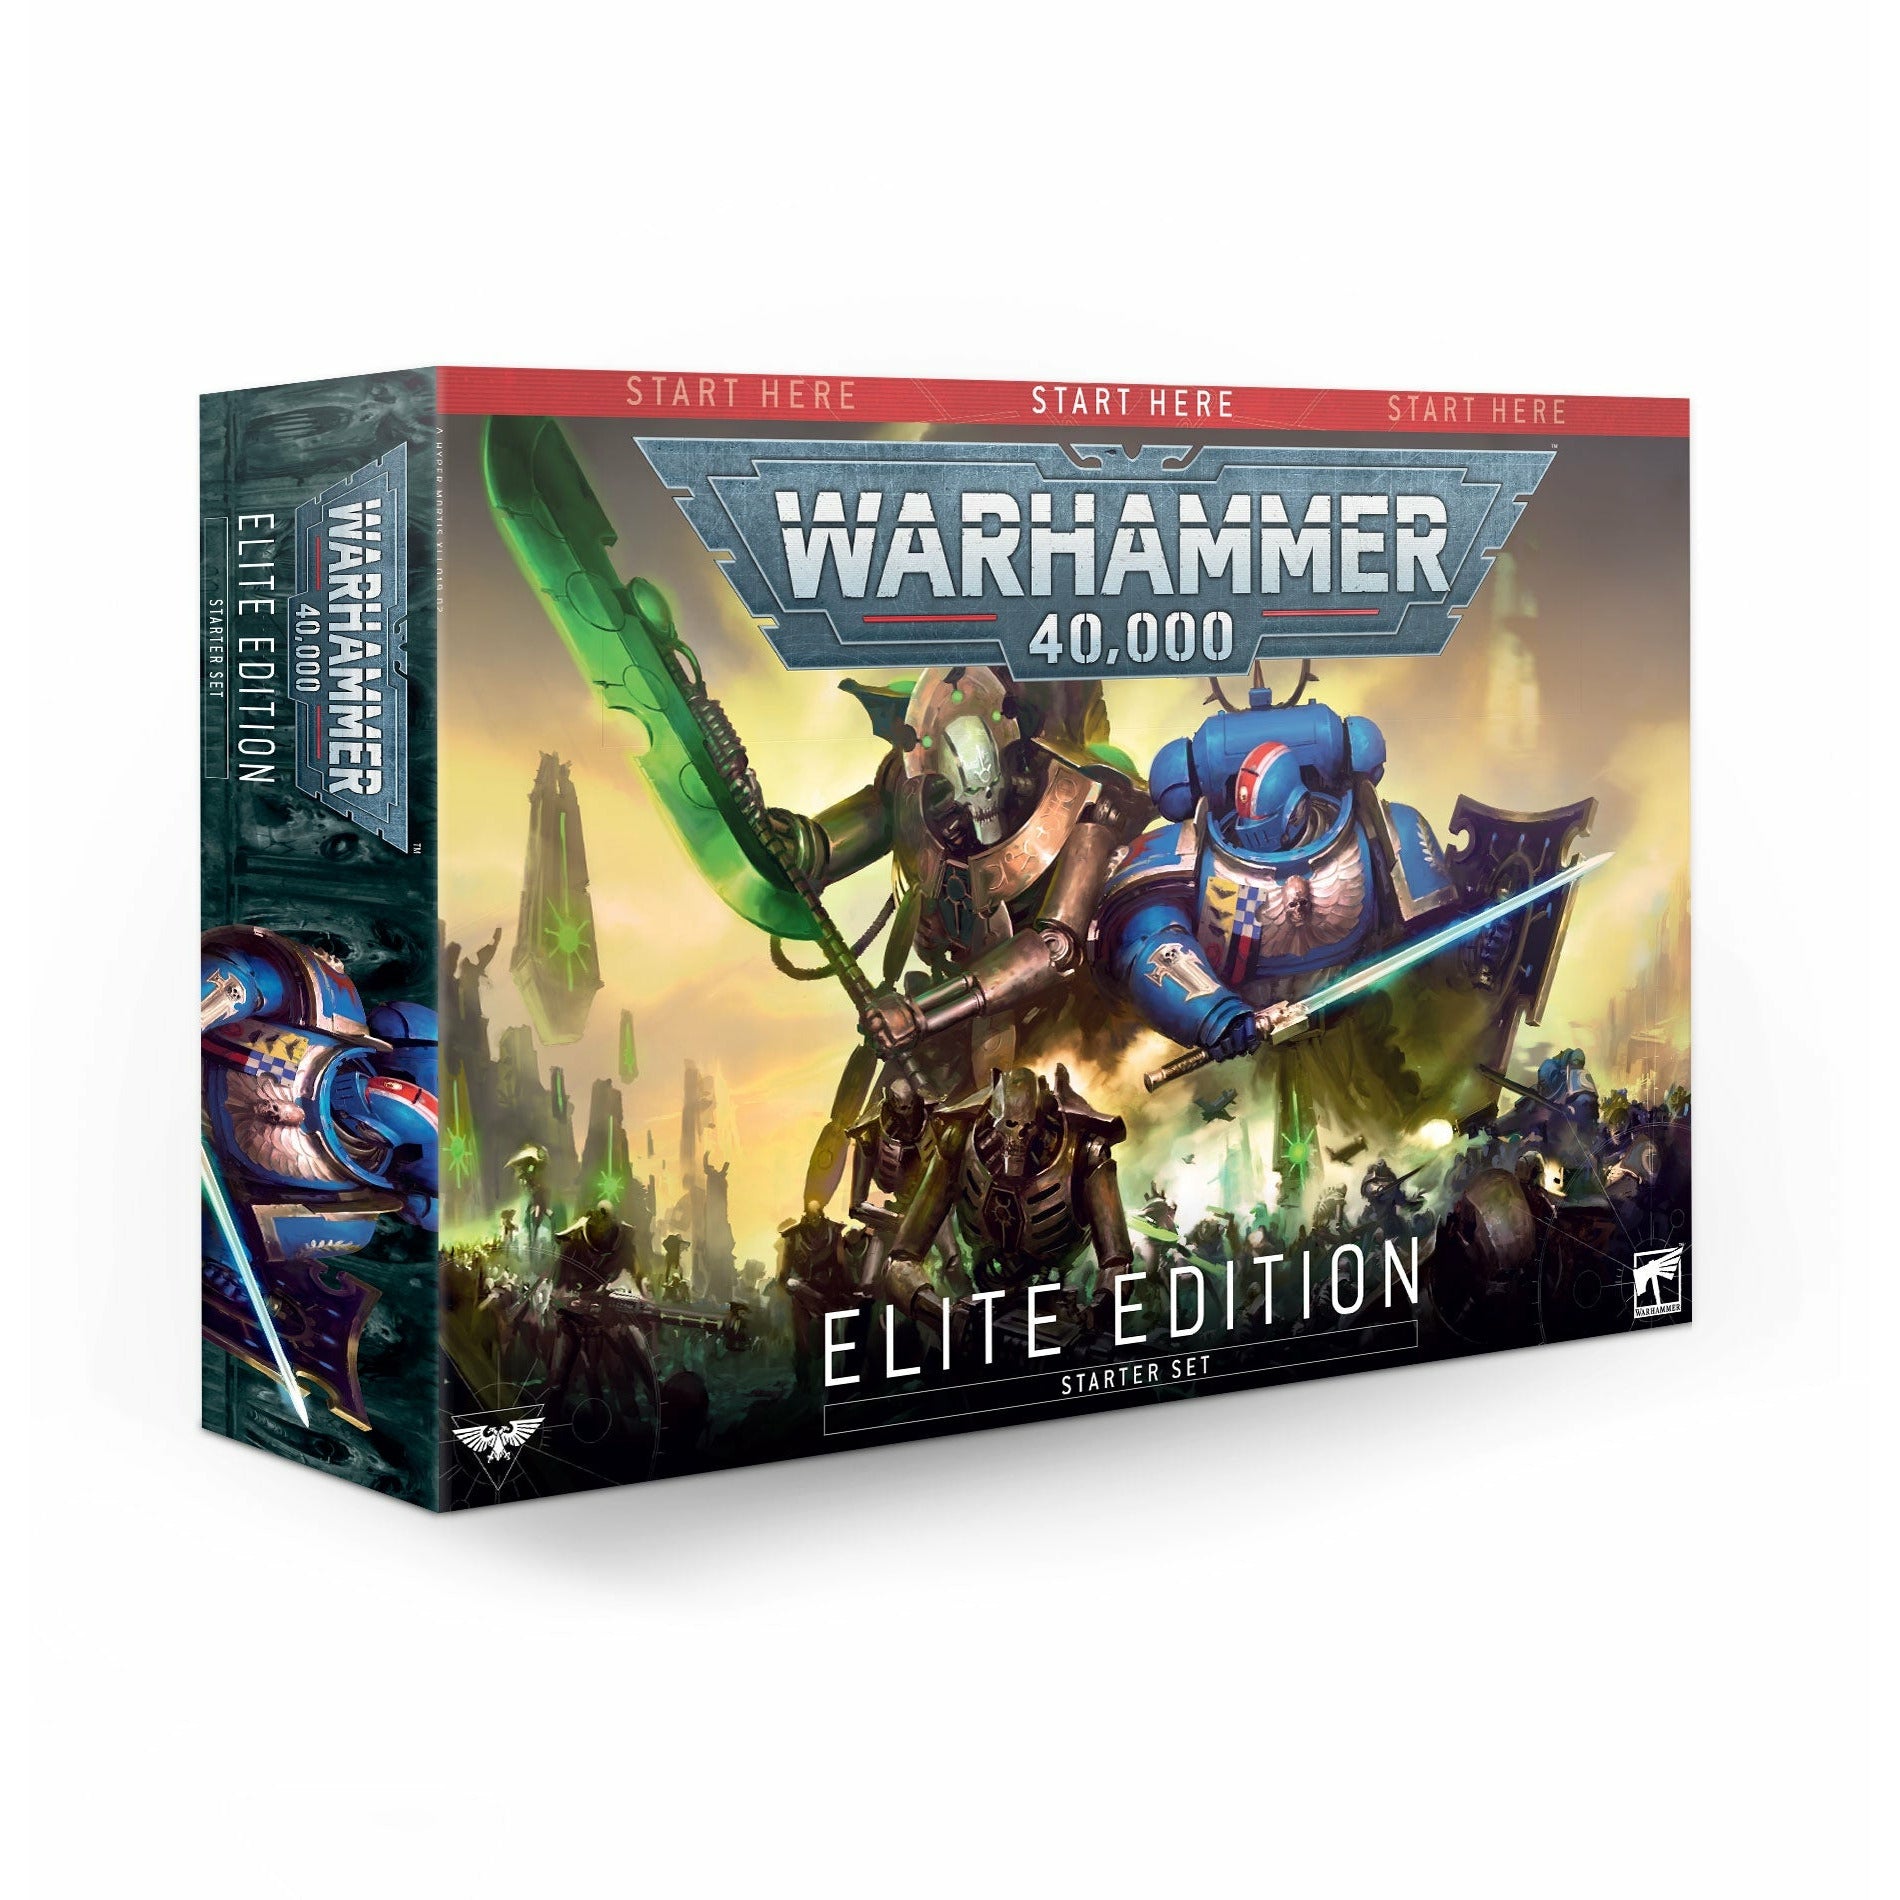 Warhammer 40,000: Starter Set